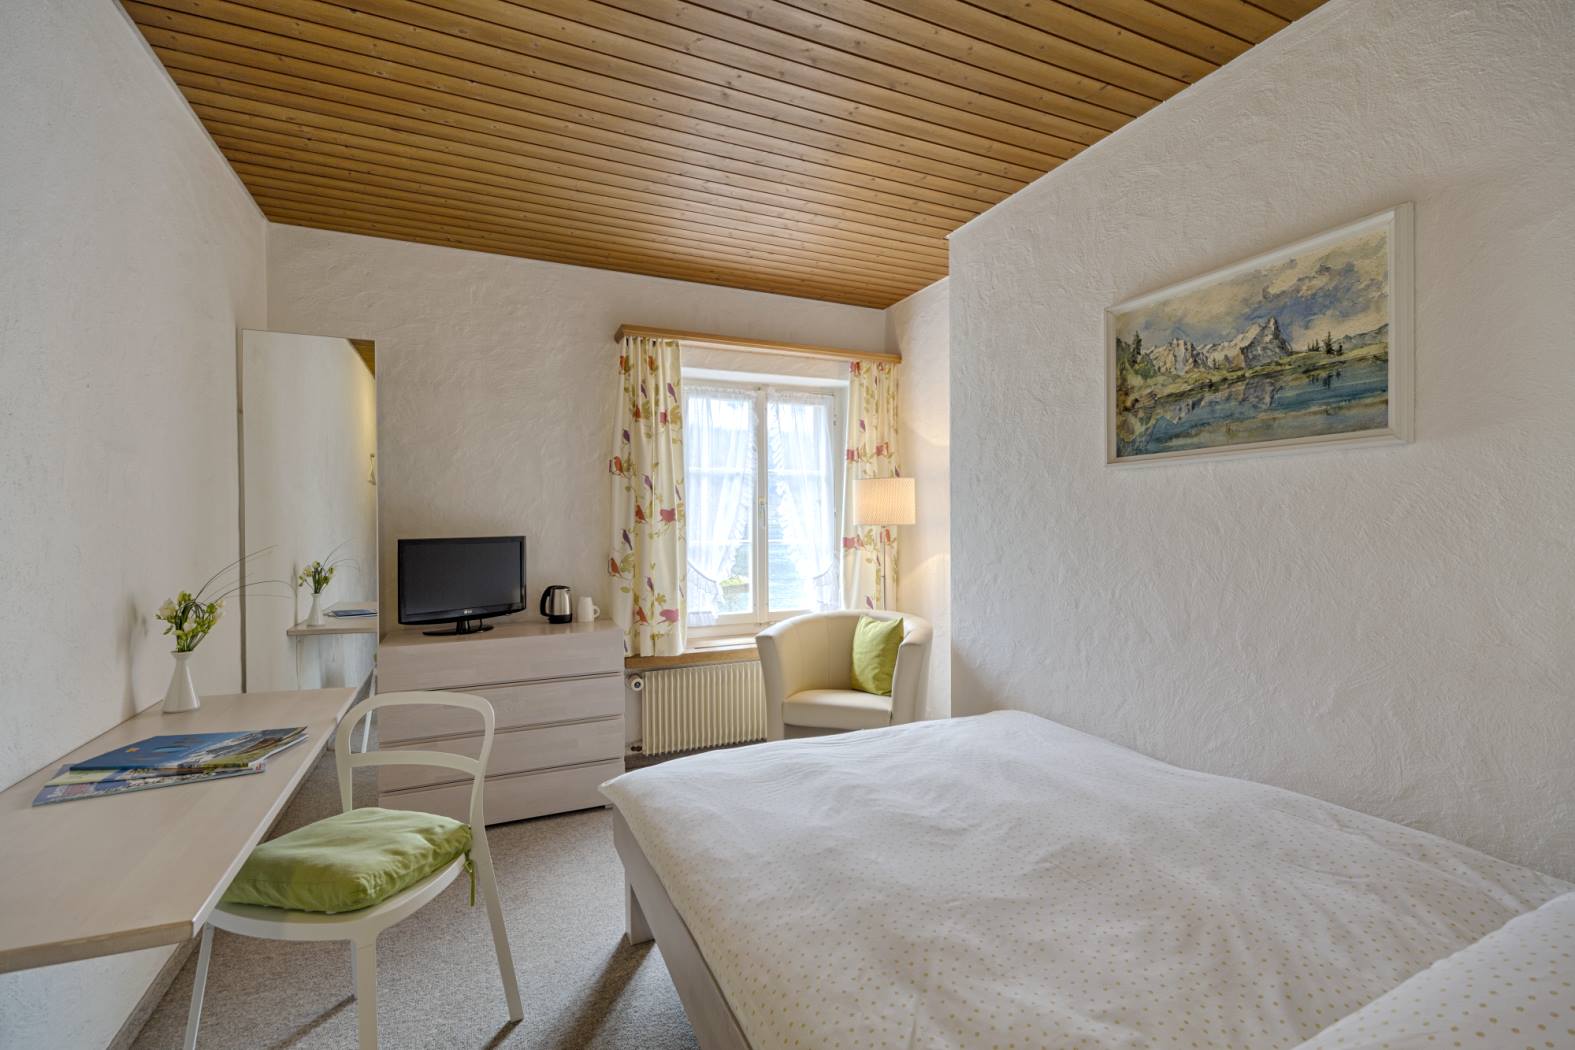 Gemütliche Nichtraucherzimmer mit Blick in die Bergwelt für 1 Person buchen im Hotel neuhaus zum see, direkt am Thunersee, Interlaken